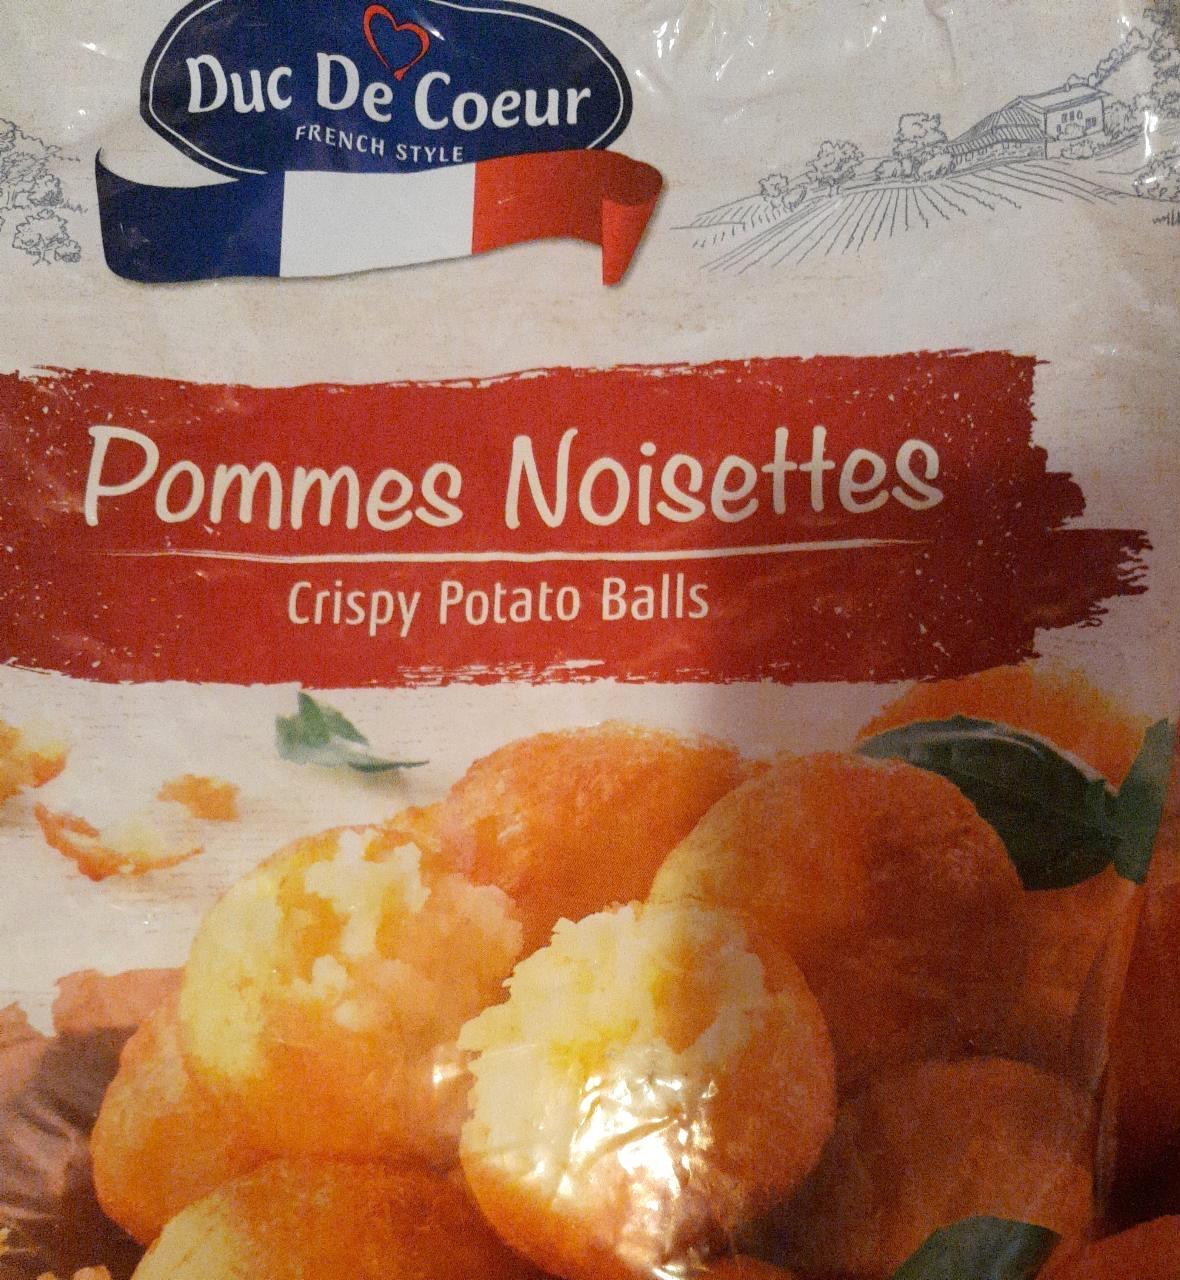 Képek - Pommes Noisettes Crispy potato balls Duc De Coeur